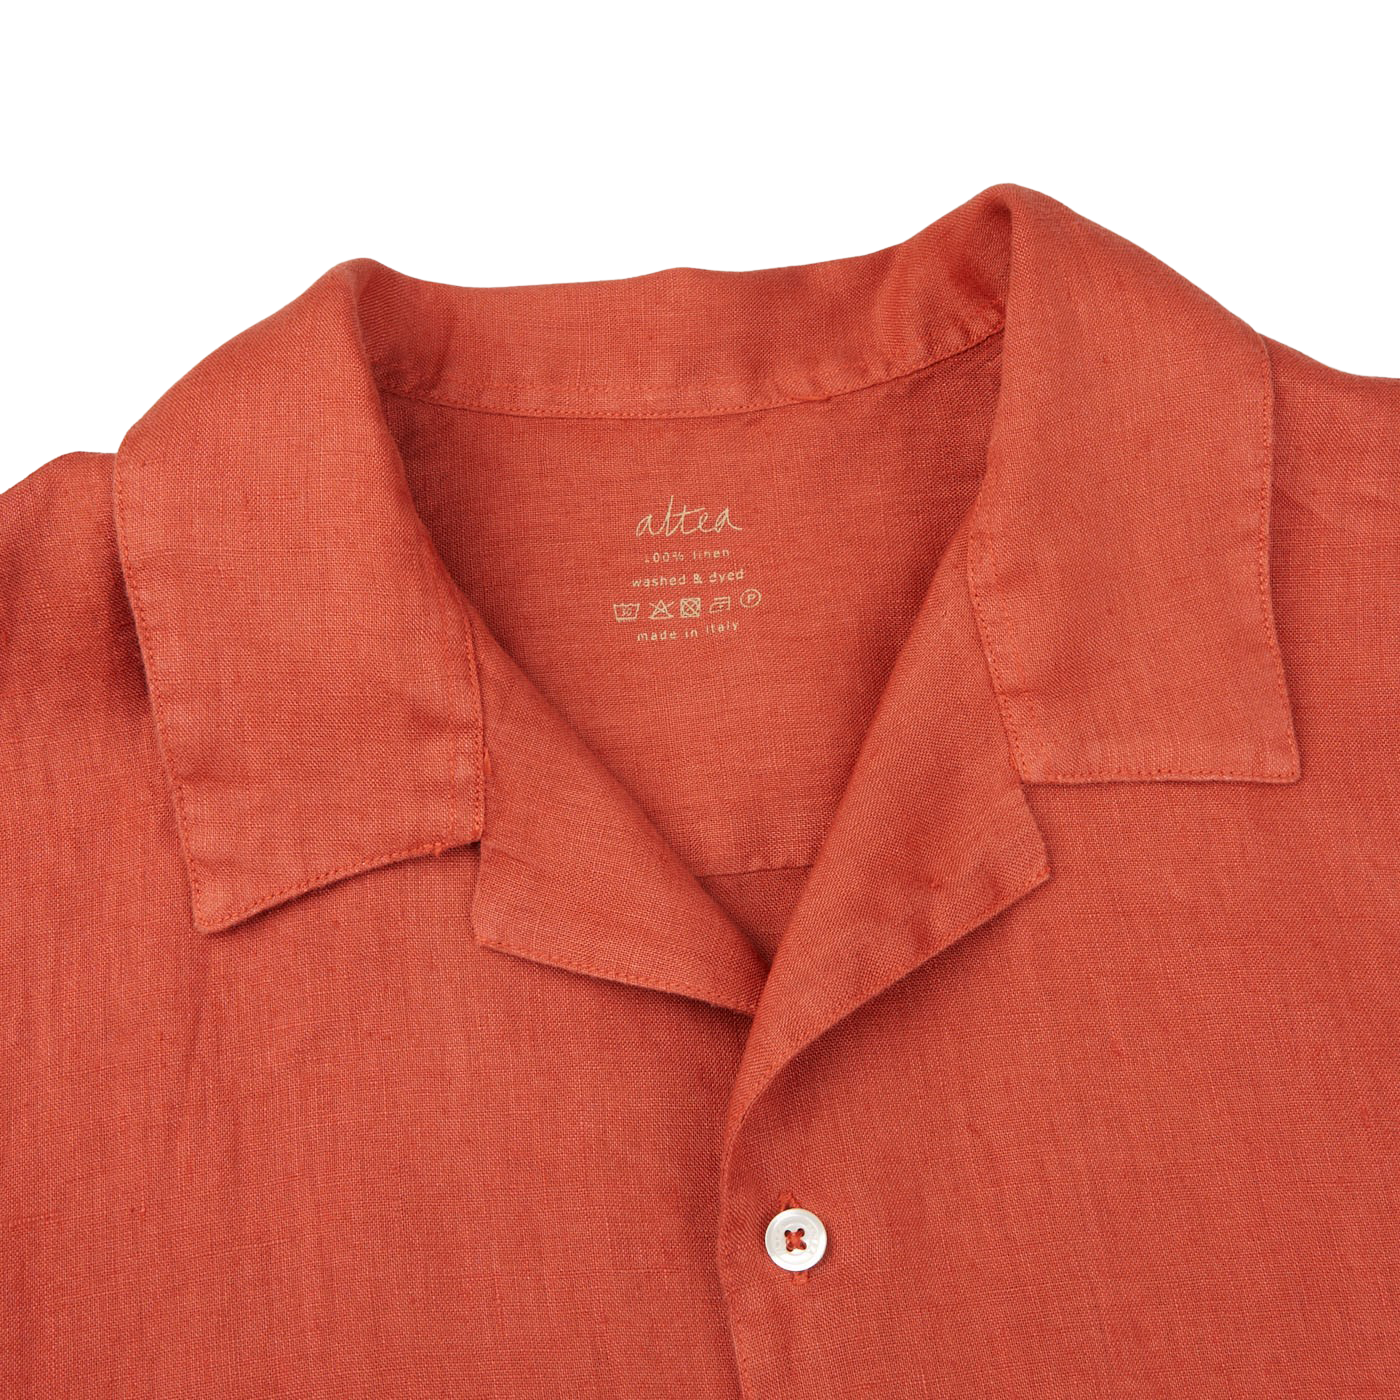 Altea Muted Orange Linen Short Sleeve Shirt Collar